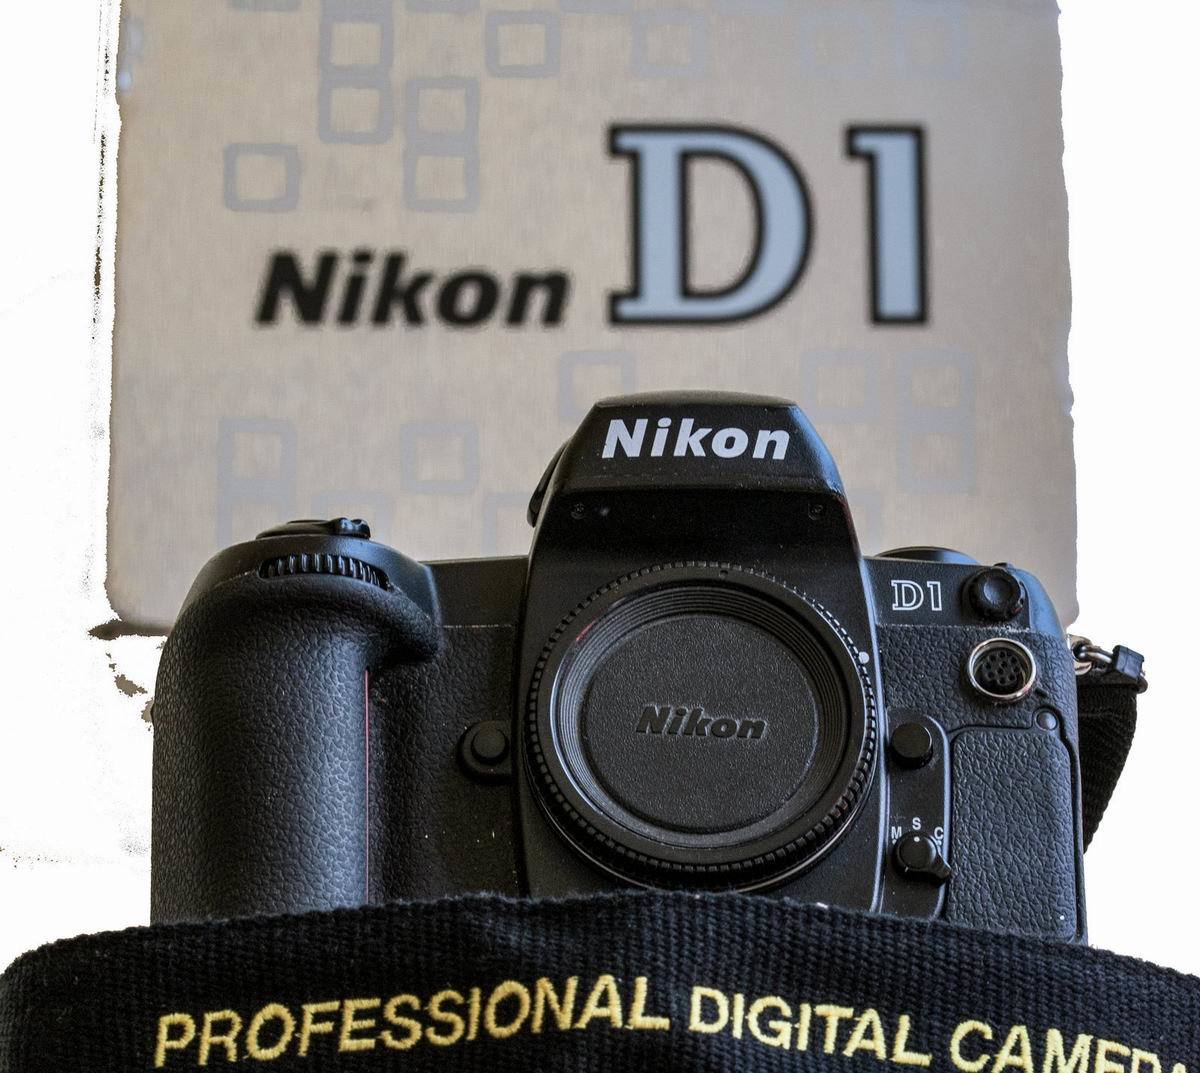 Maggiori informazioni su "Nikon D1, la capostipite delle DSLR"